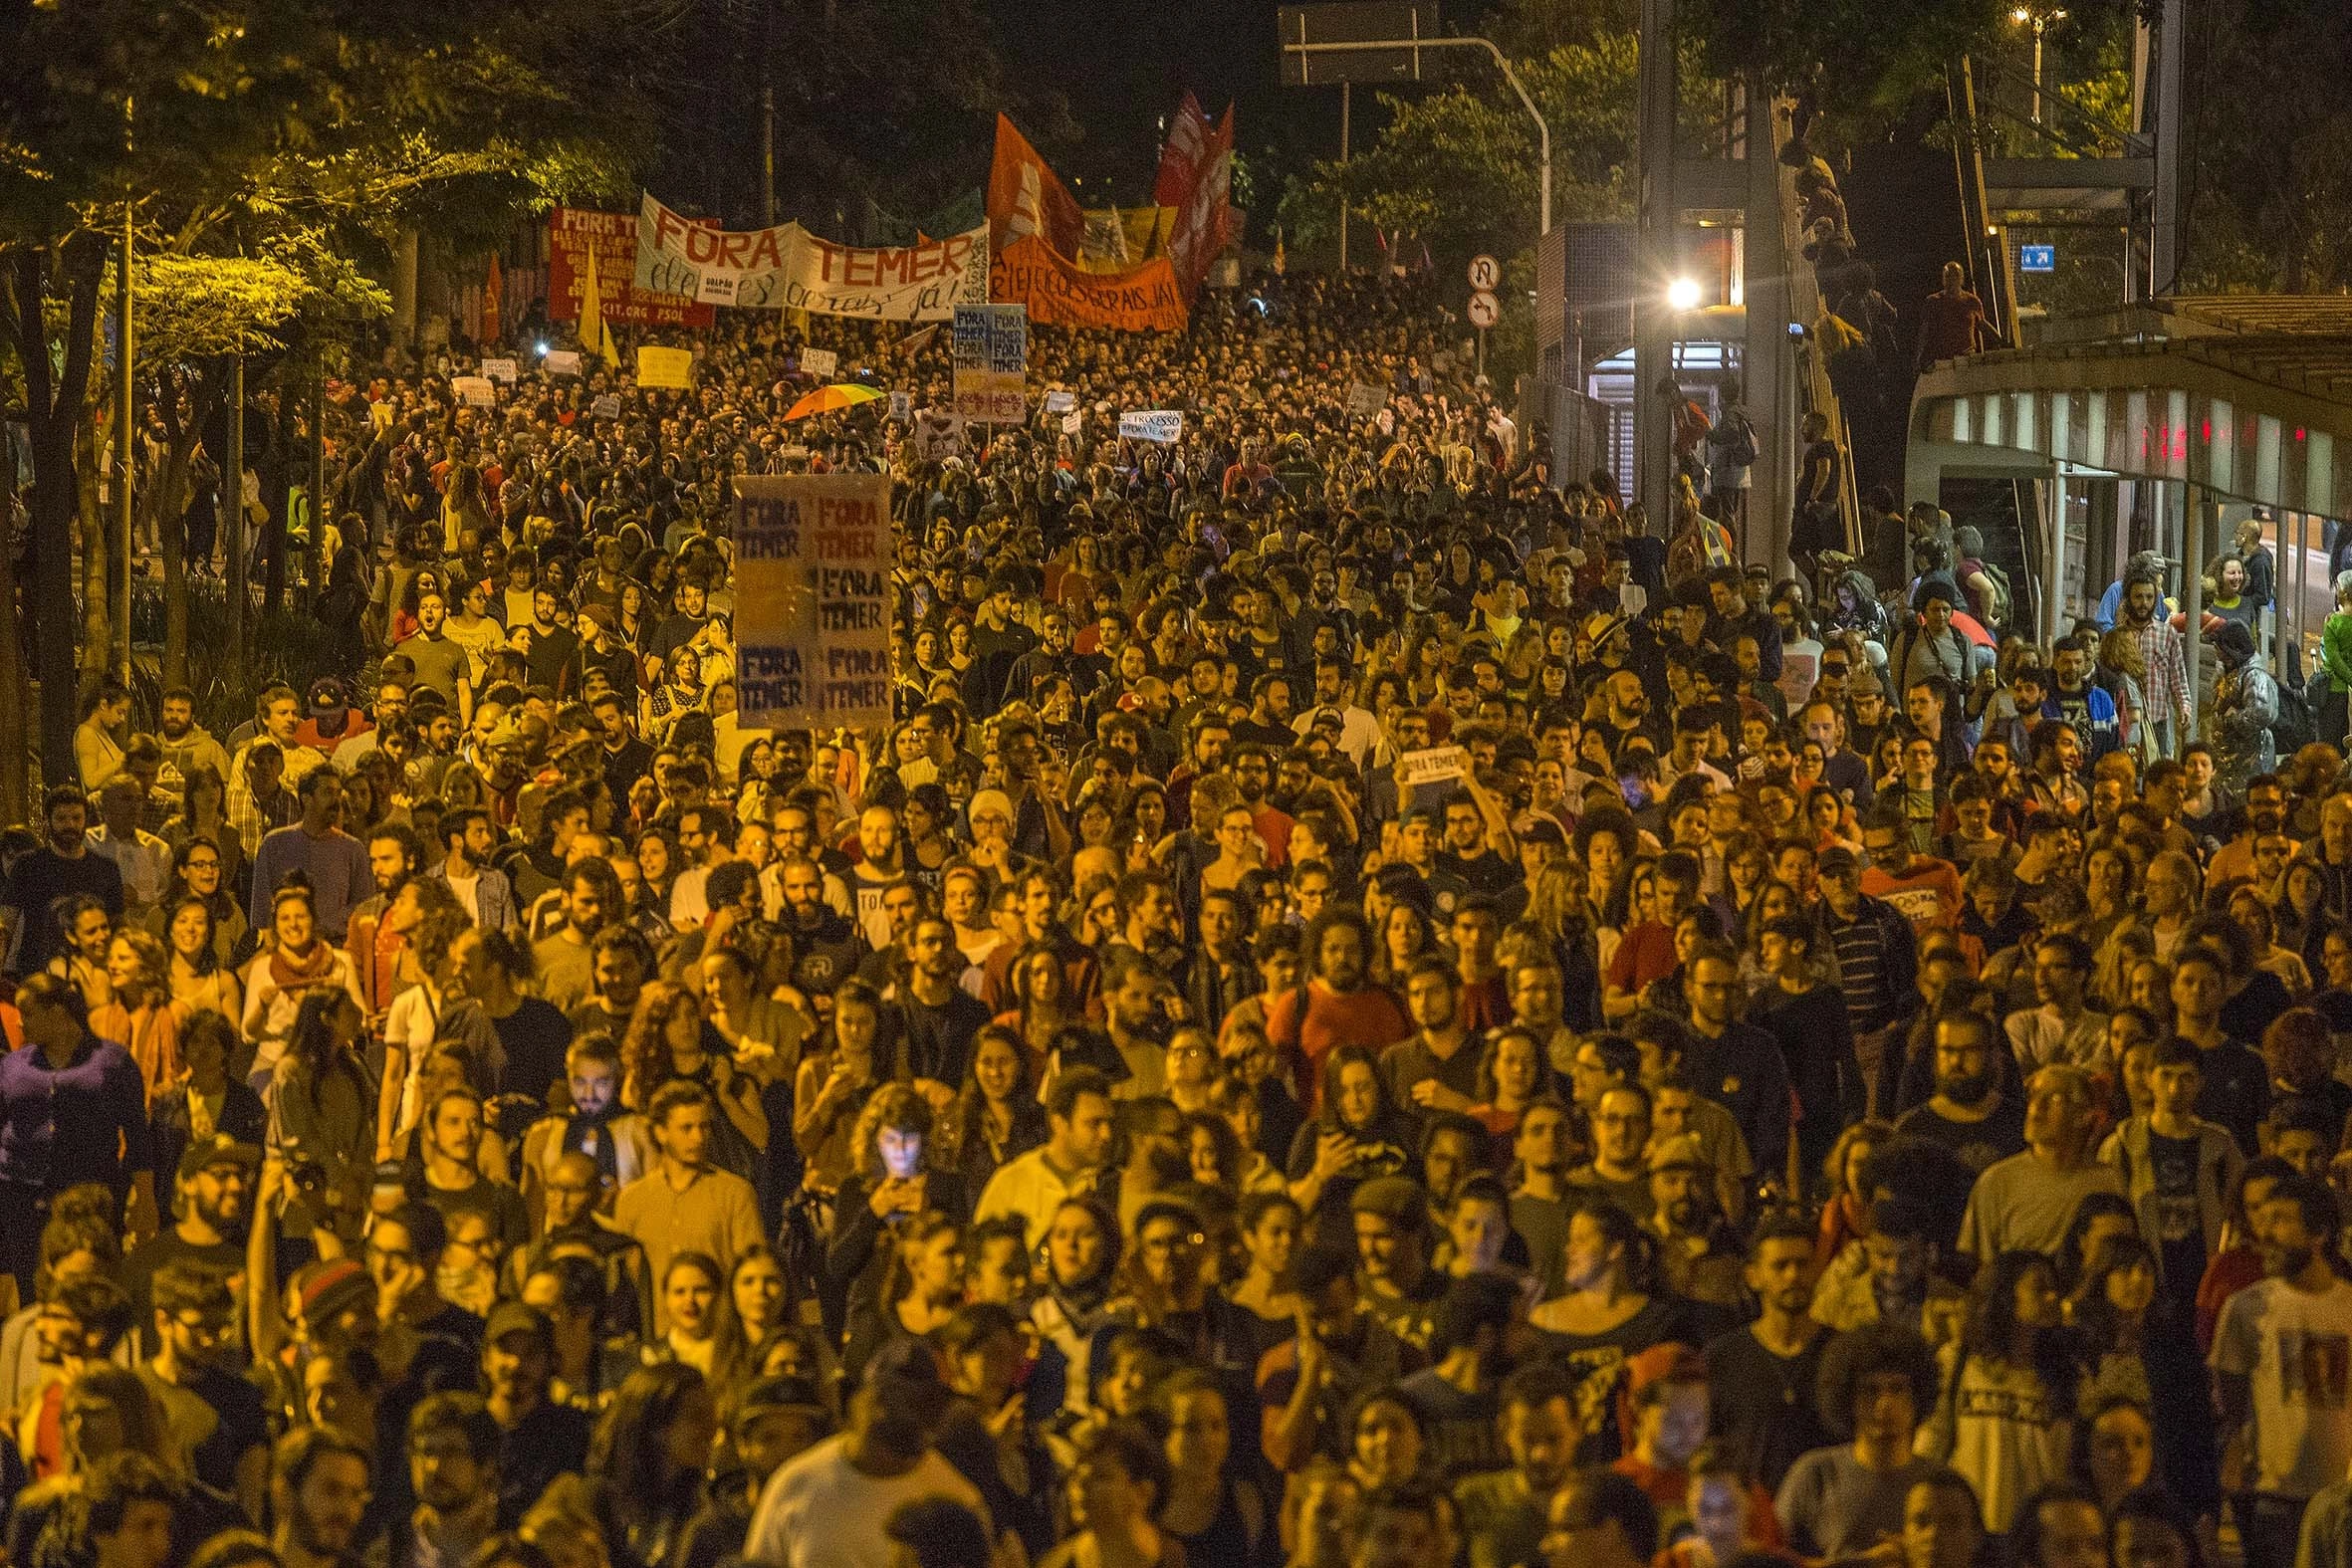 SÃO PAULO, SP, 04.09.2016: PROTESTOS-TEMER - Manifestantes fazem ato em repúdio ao presidente Michel Temer, na avenida Paulista no centro de São Paulo, na noite deste domingo (4). (Foto: Marlene Bergamo/Folhapress)